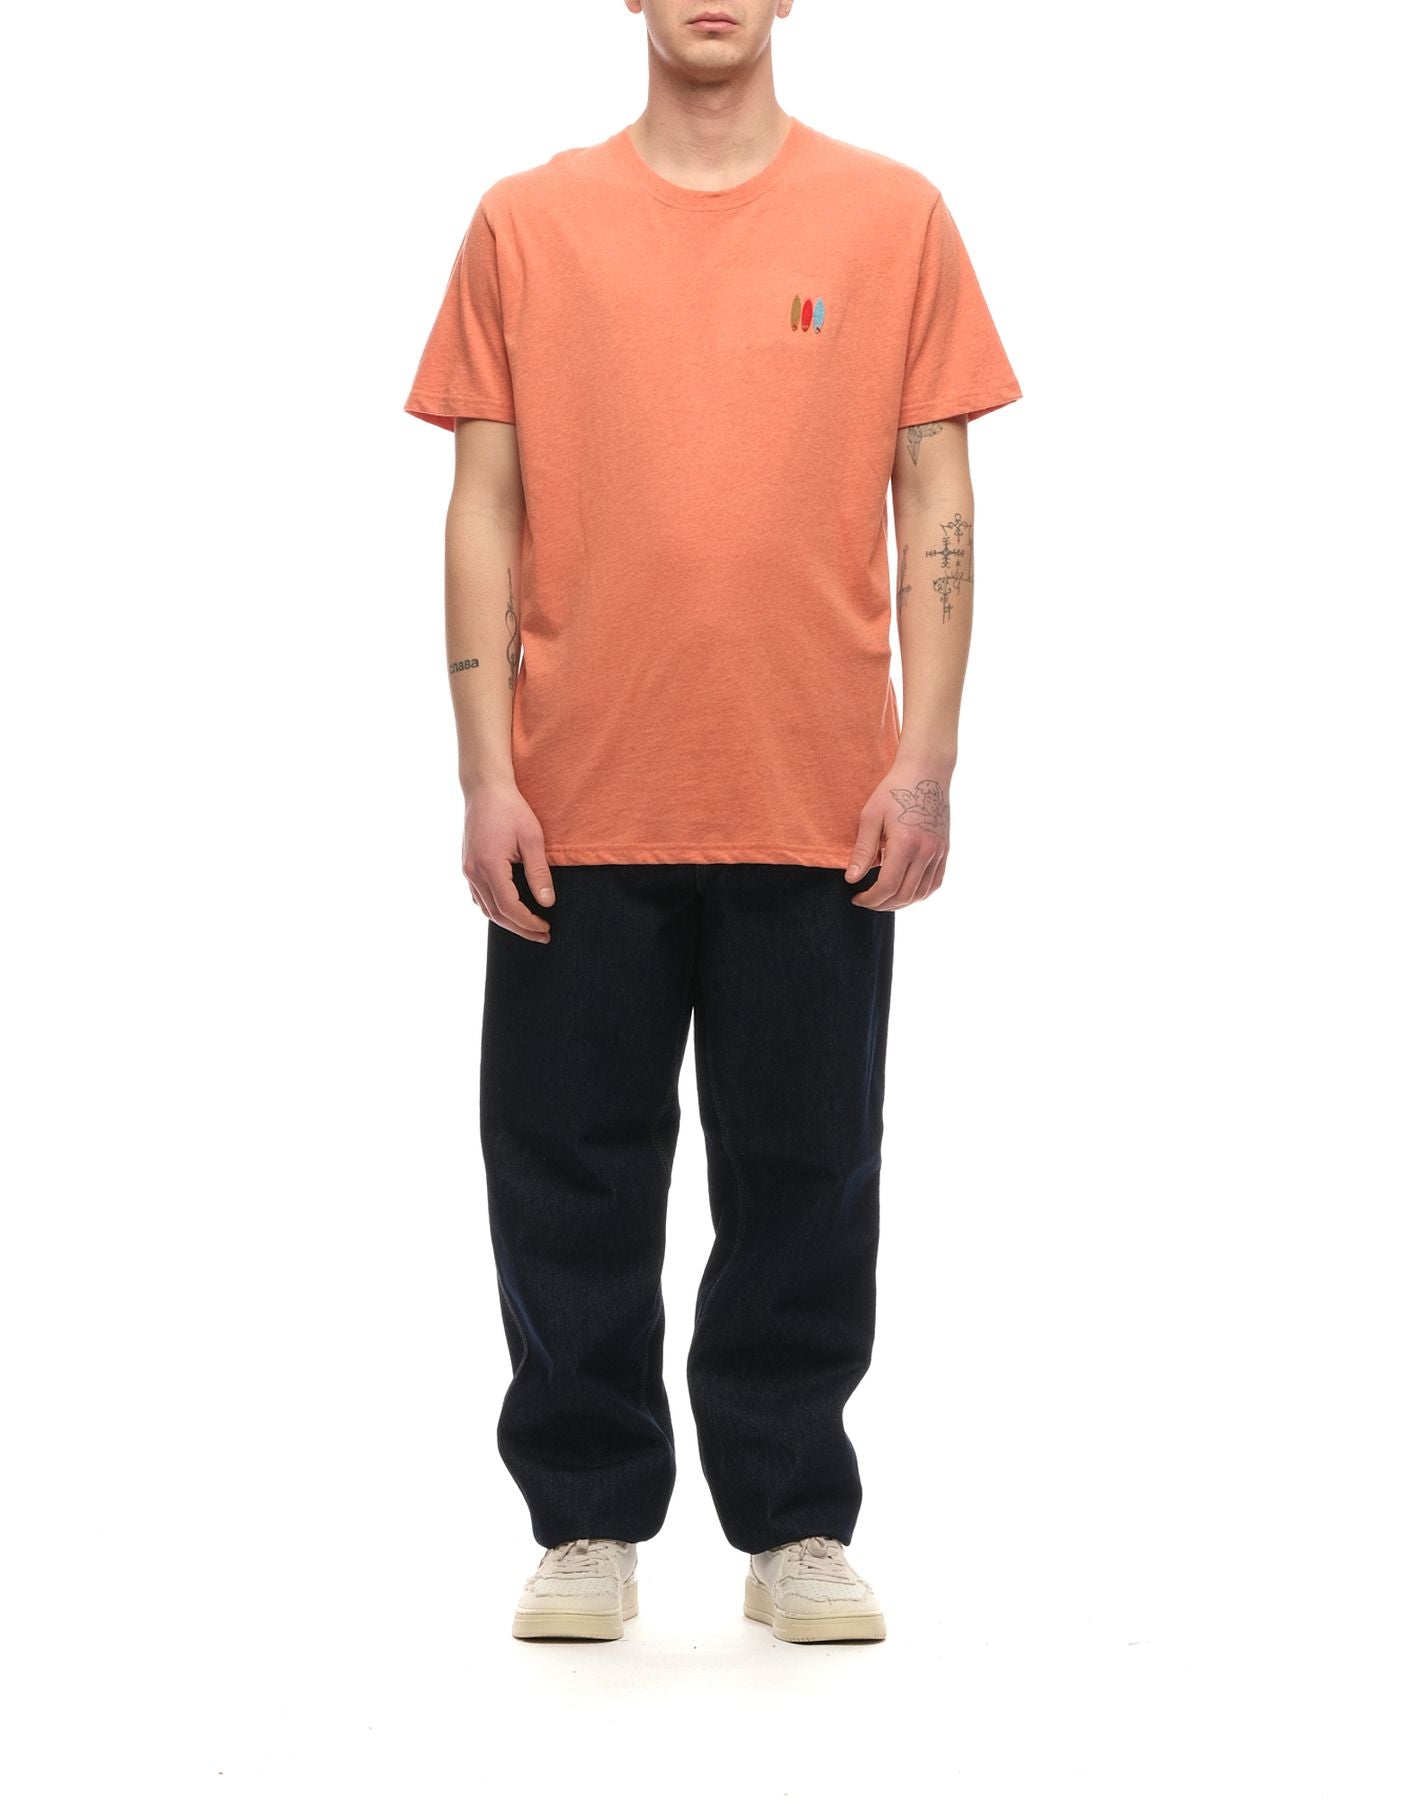 T-shirt pour l'homme 1316 orange Revolution